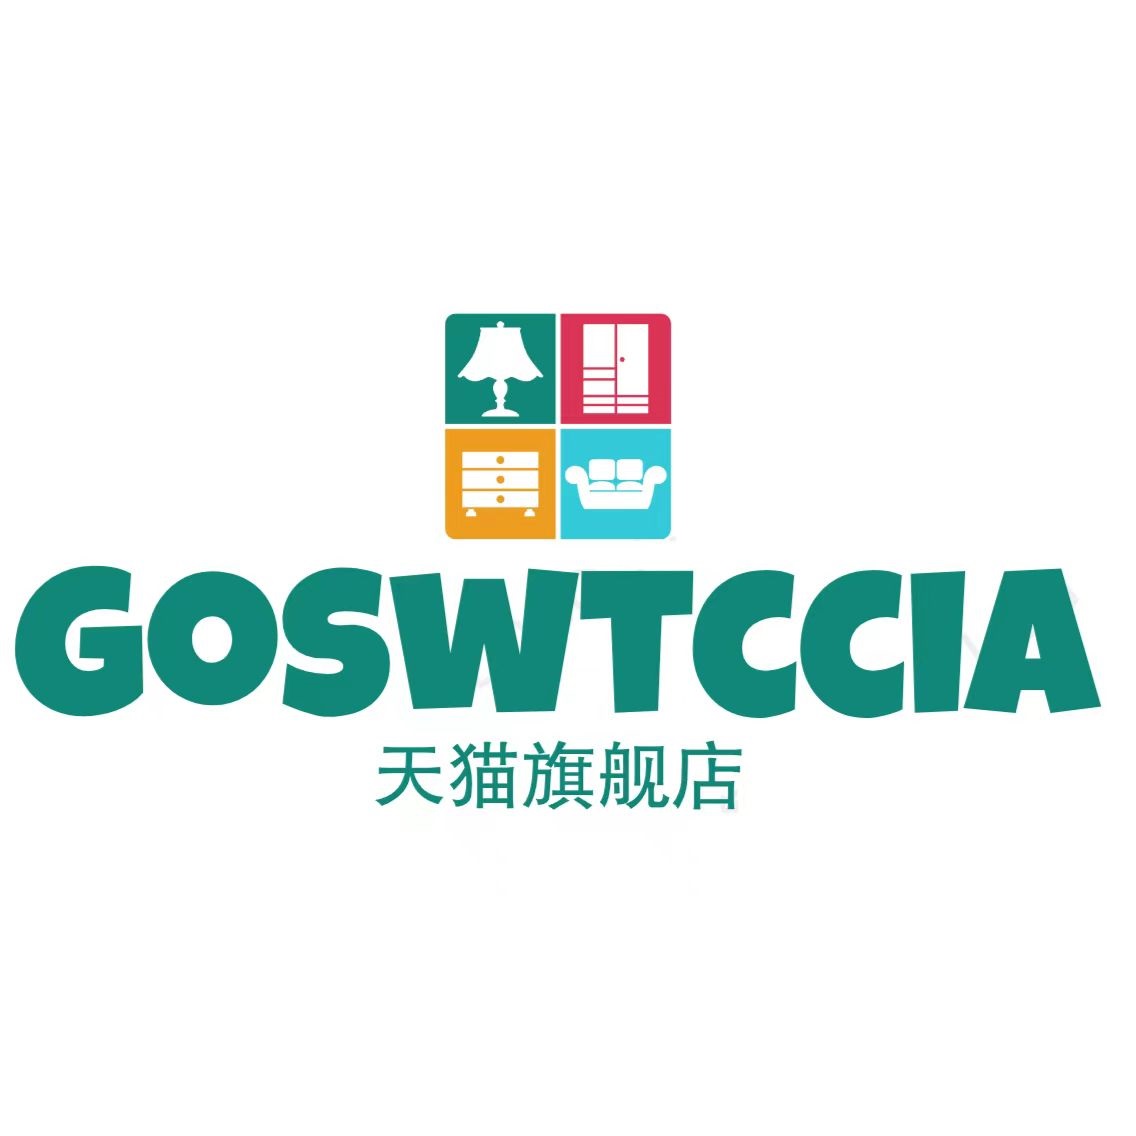 goswtccia